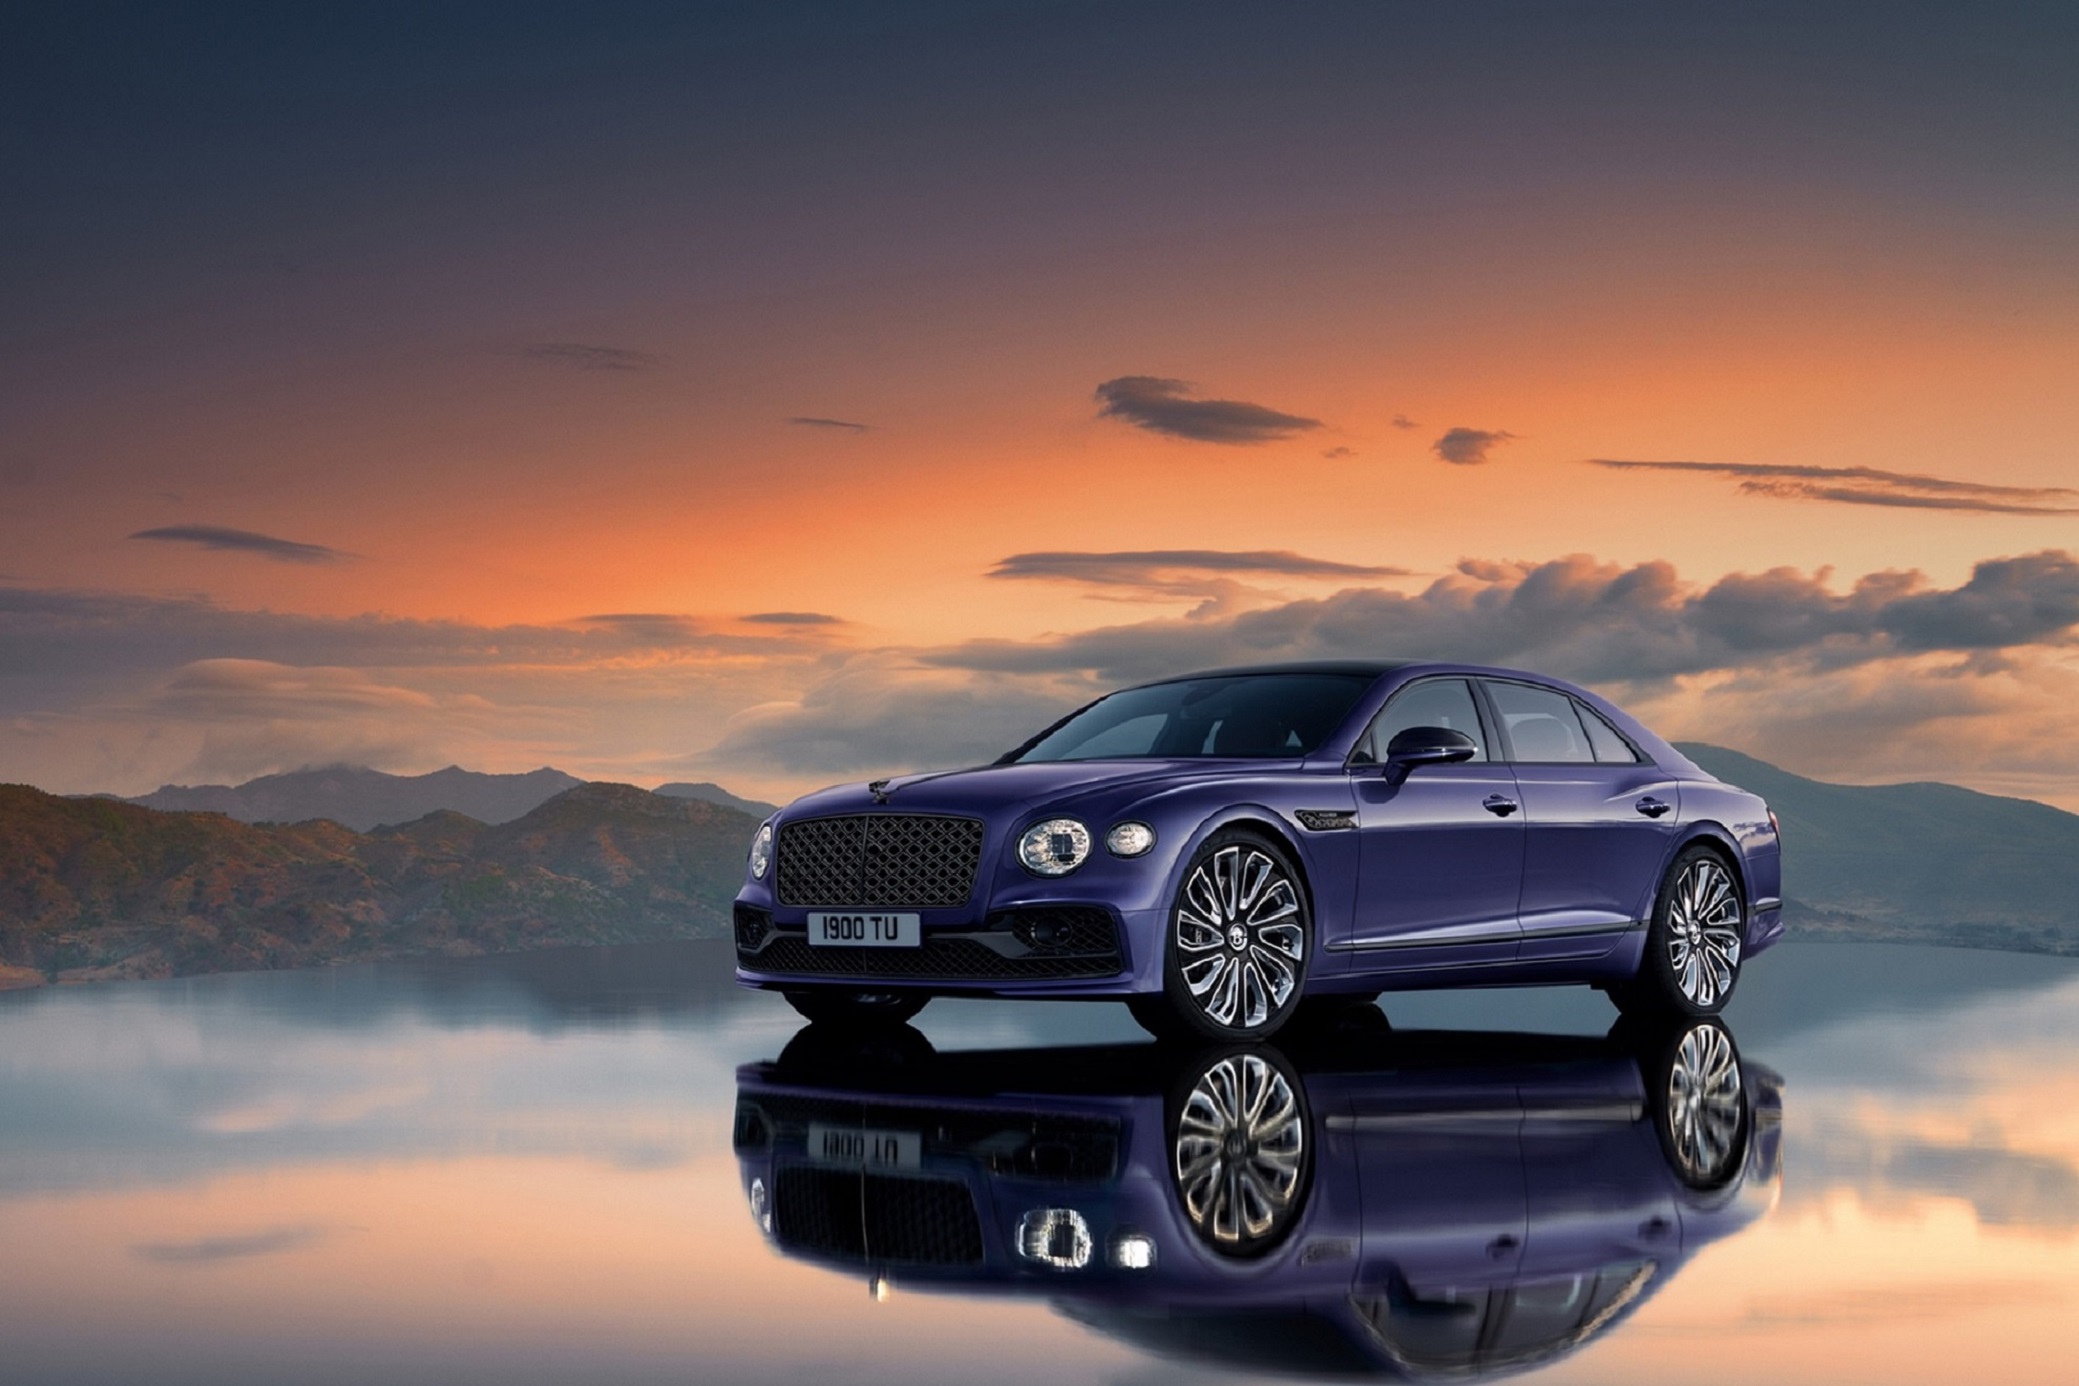 Η Bentley παρουσιάζει την πρώτη εταιρική Έκθεση Βιωσιμότητας